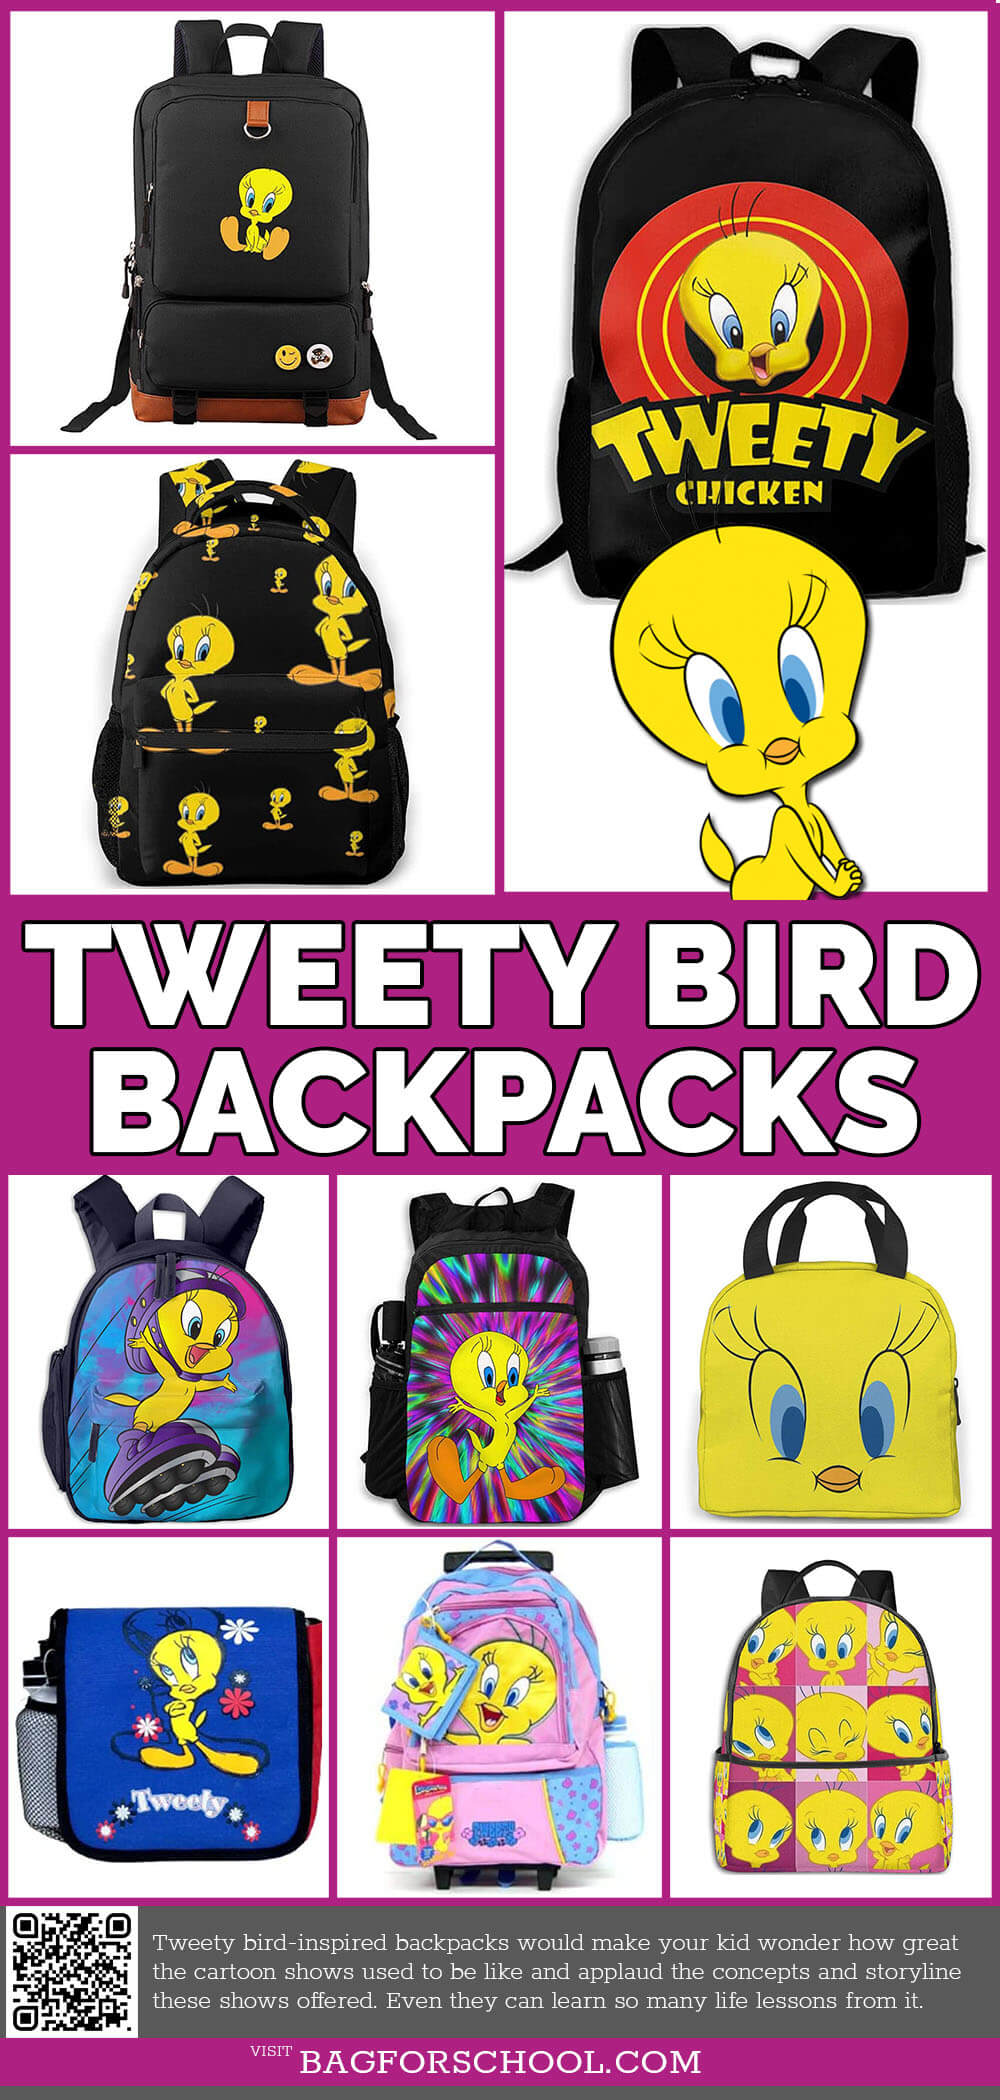 Tweety Bird Backpacks